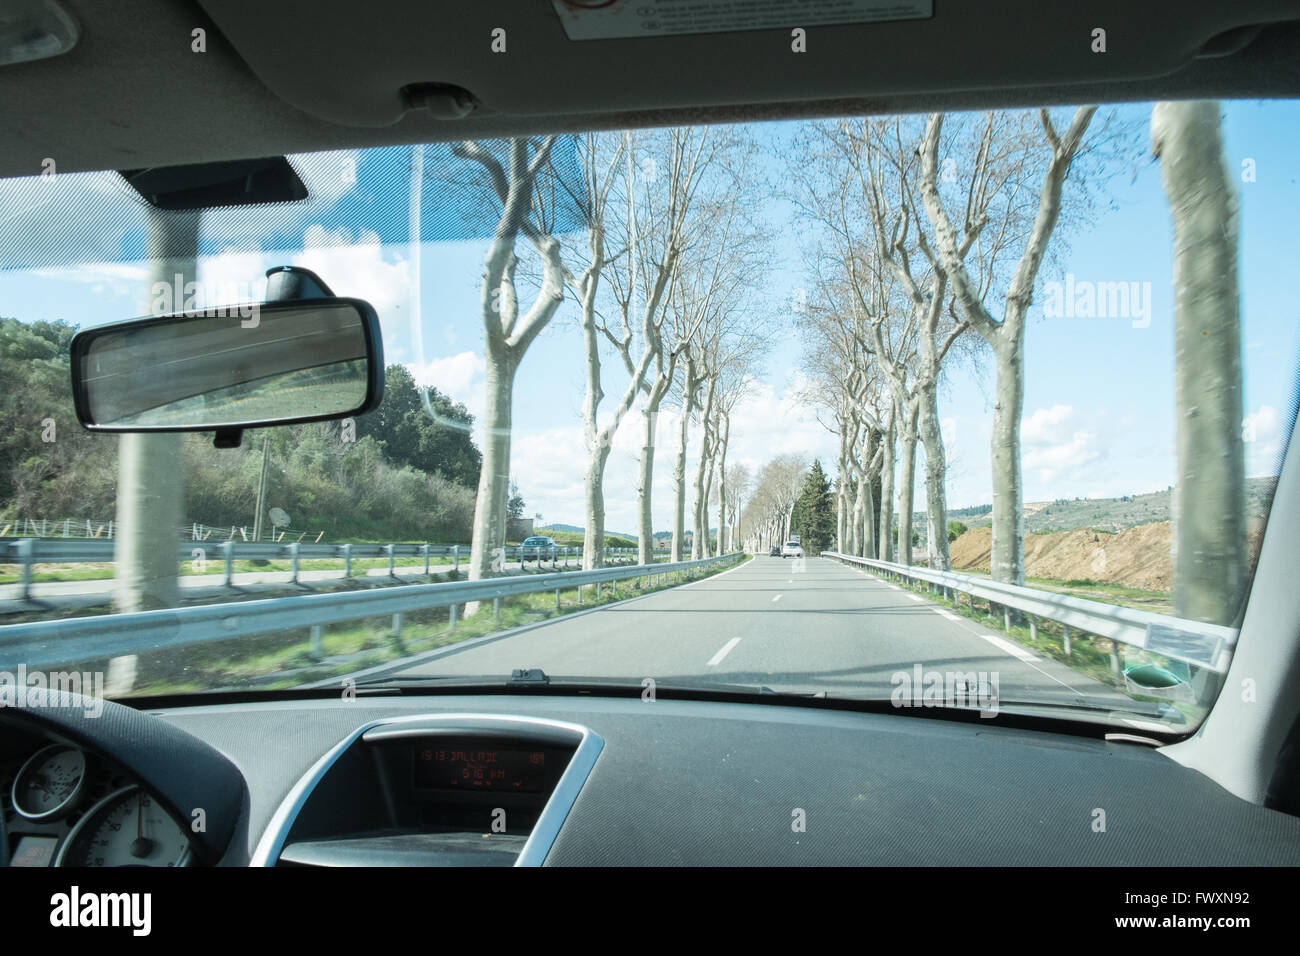 Platanen säumen die Straße, die D118, zwischen Limoux und Couiza in Aude, Südfrankreich, Frankreich, Französisch, Straße, Land, Land, Land, Europa. Stockfoto